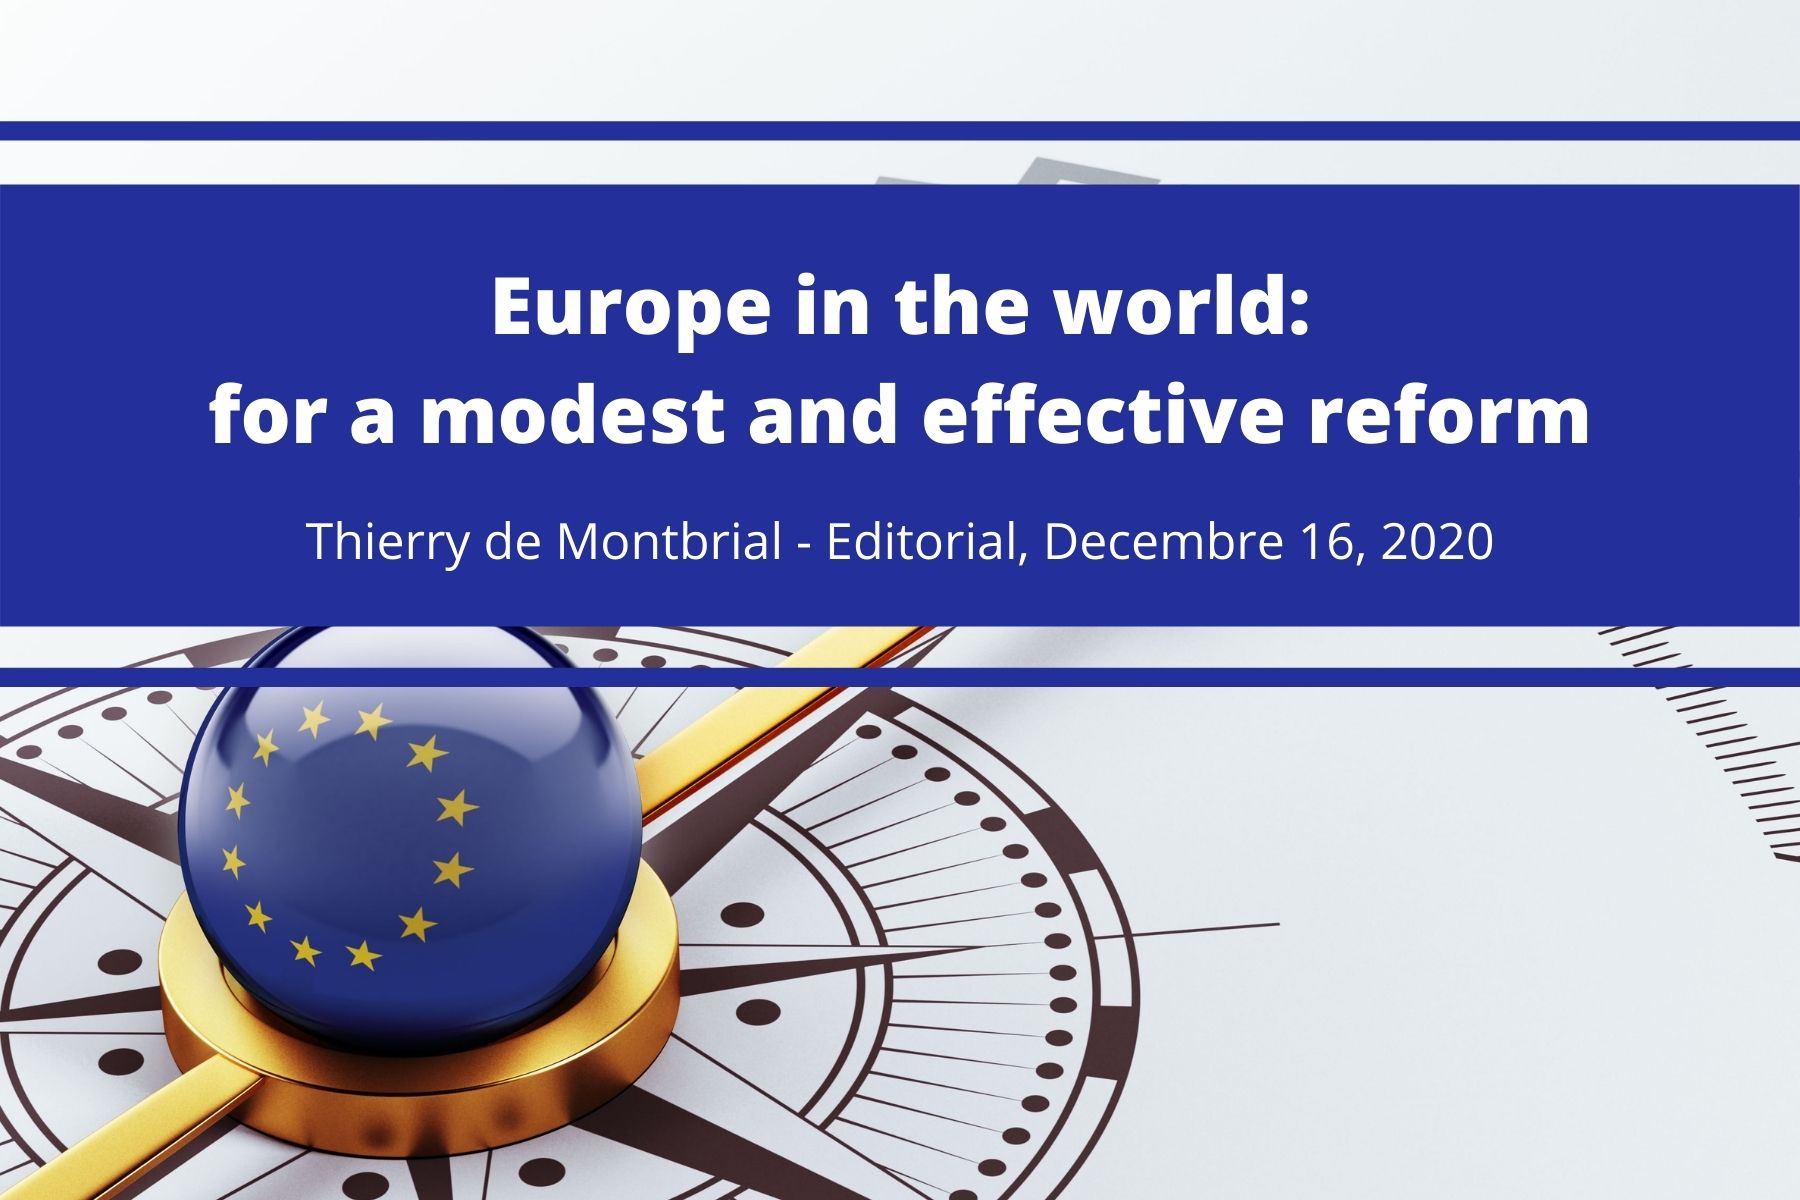 Thierry de Montbrial Editorial December 2020